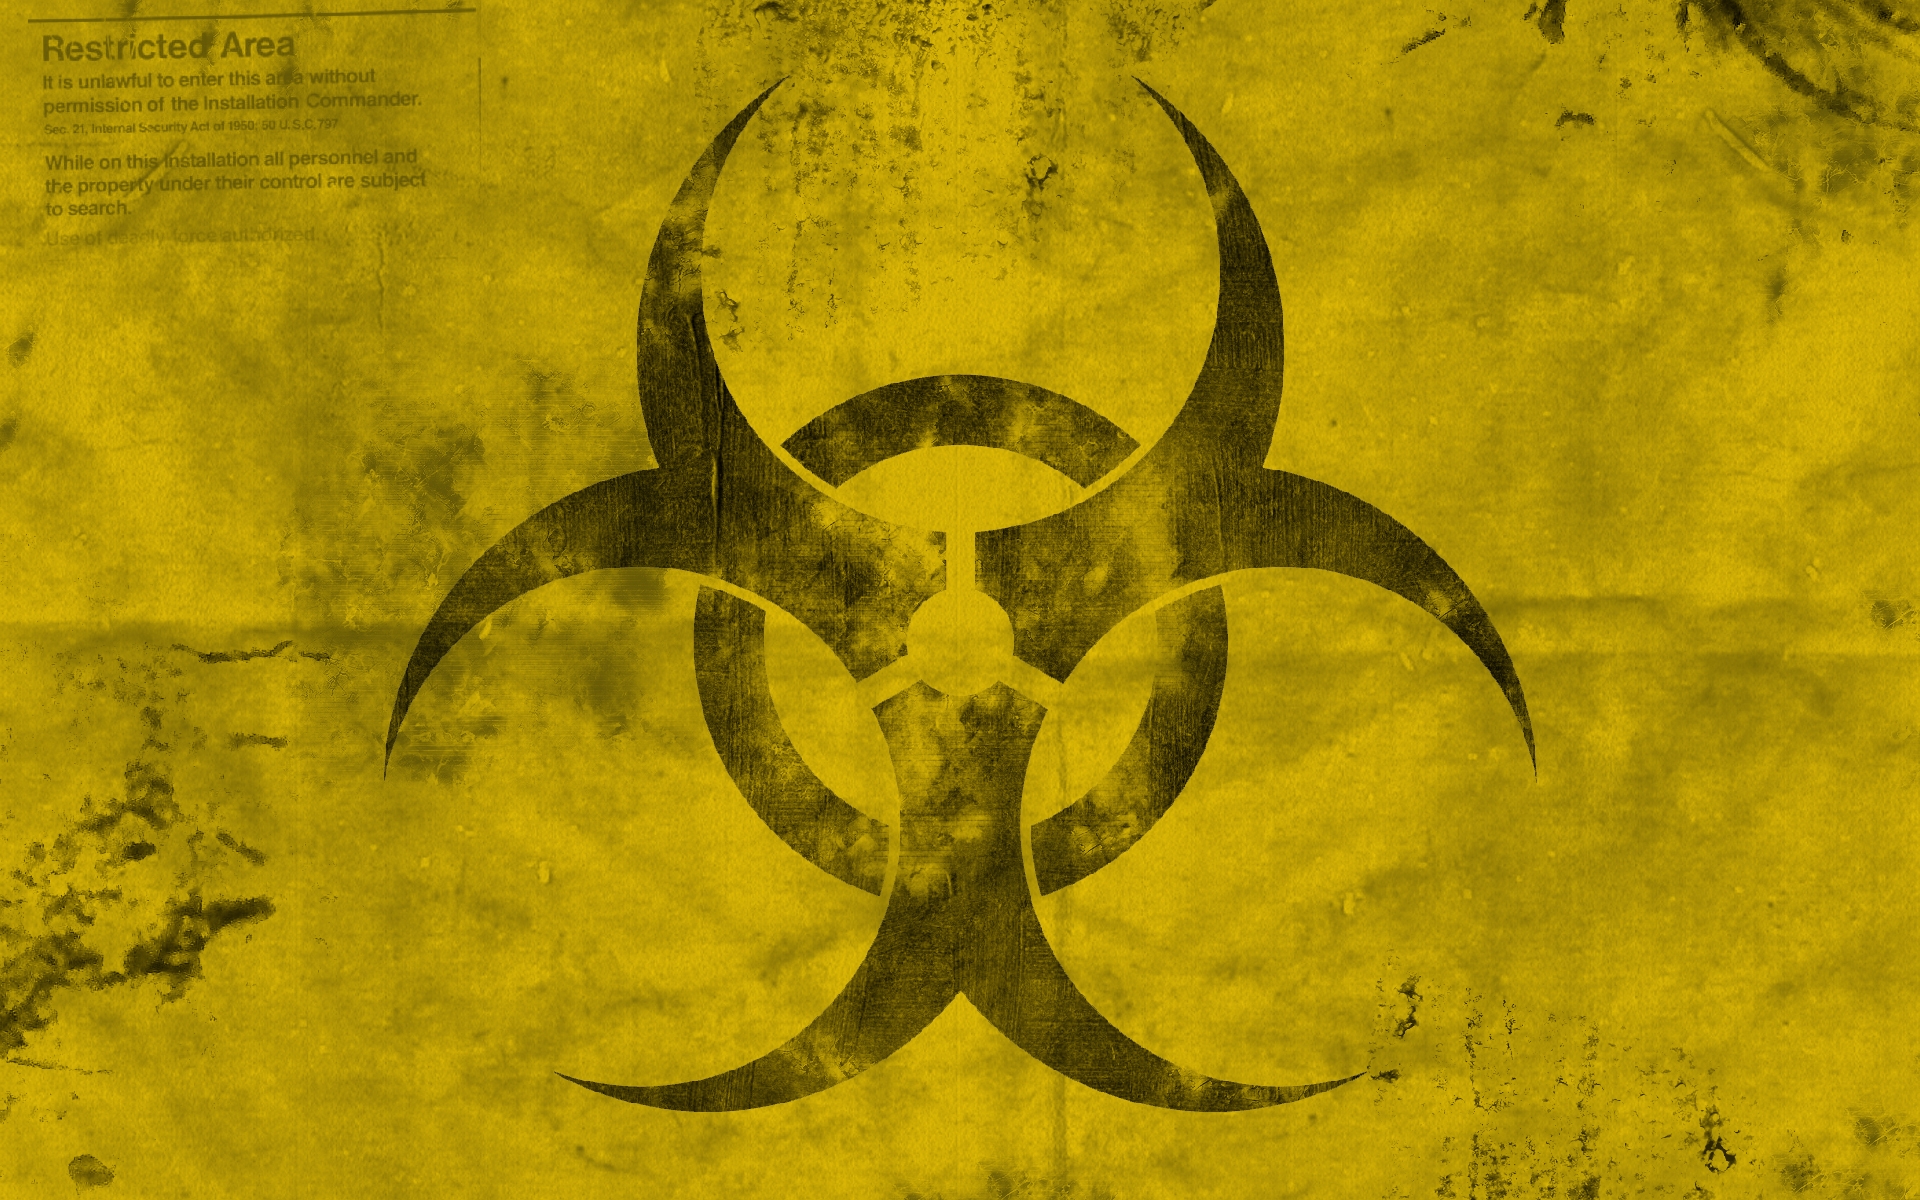 Biohazard Wallpapers